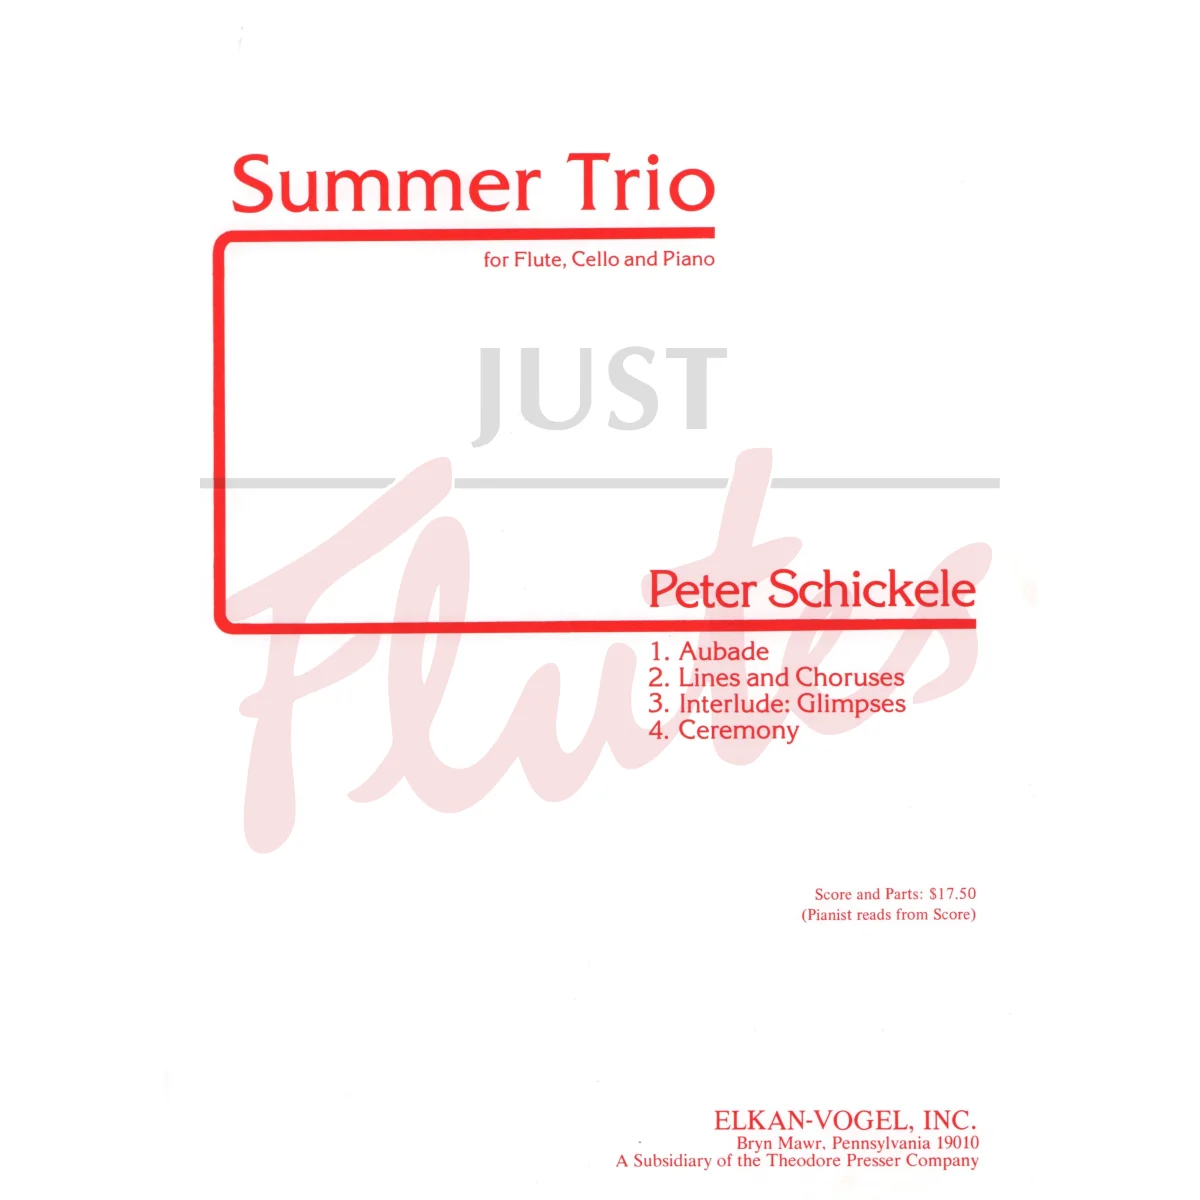 Summer Trio for Flute, Cello and Piano